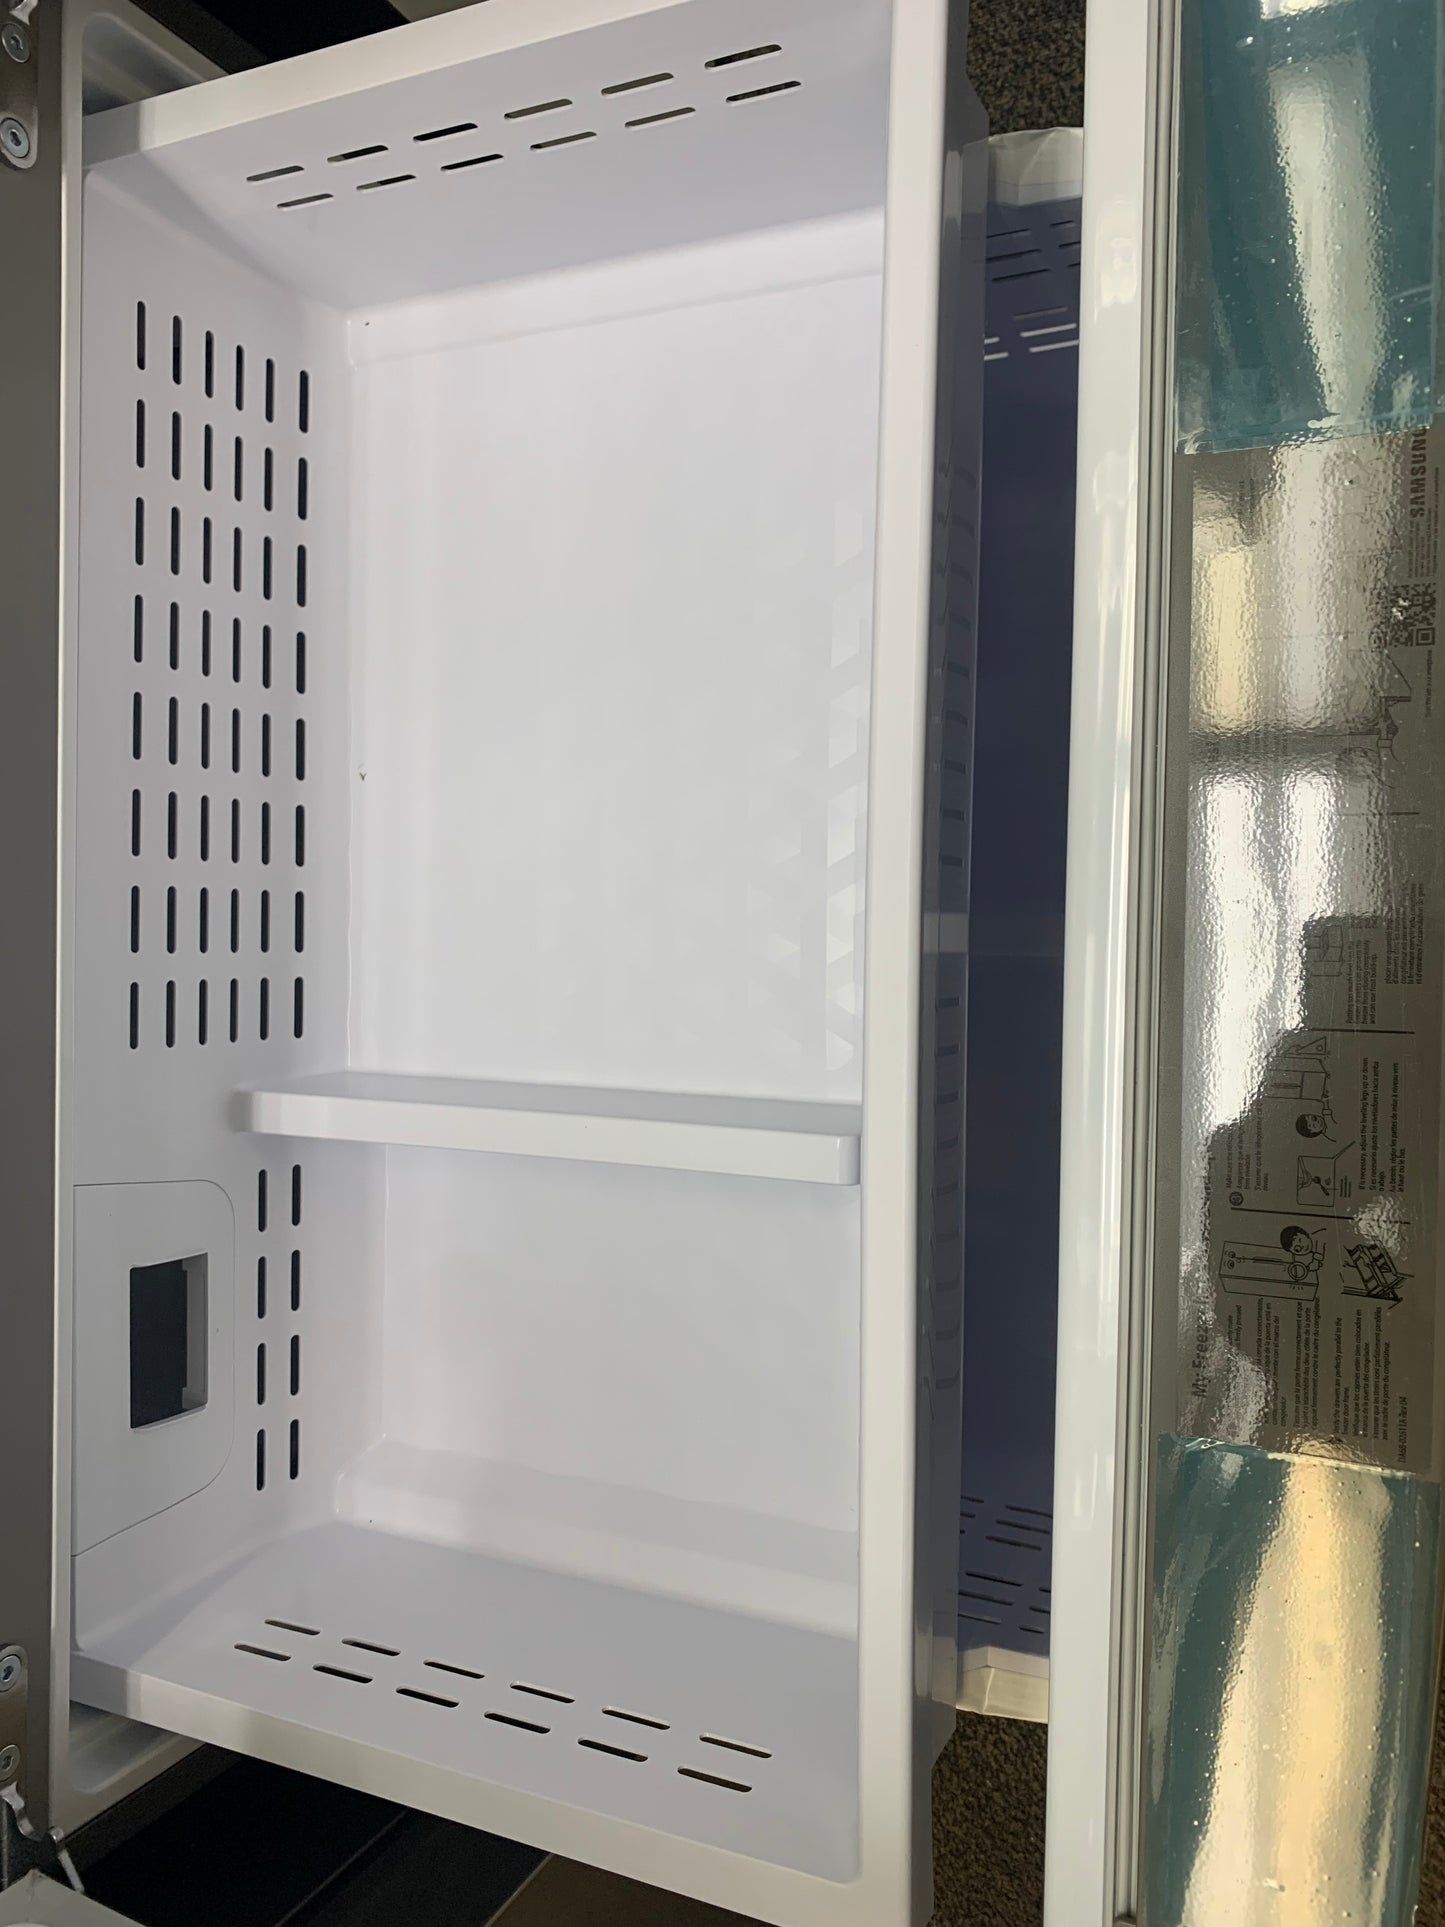 ⭐️ Mother’s Day ★ Samsung Open Box French Door Refrigerator 35.75 in. W 27 cu. ft. 3-Door in Fingerprint Resistant Stainless Steel, Standard Depth M: RF27T5201SR